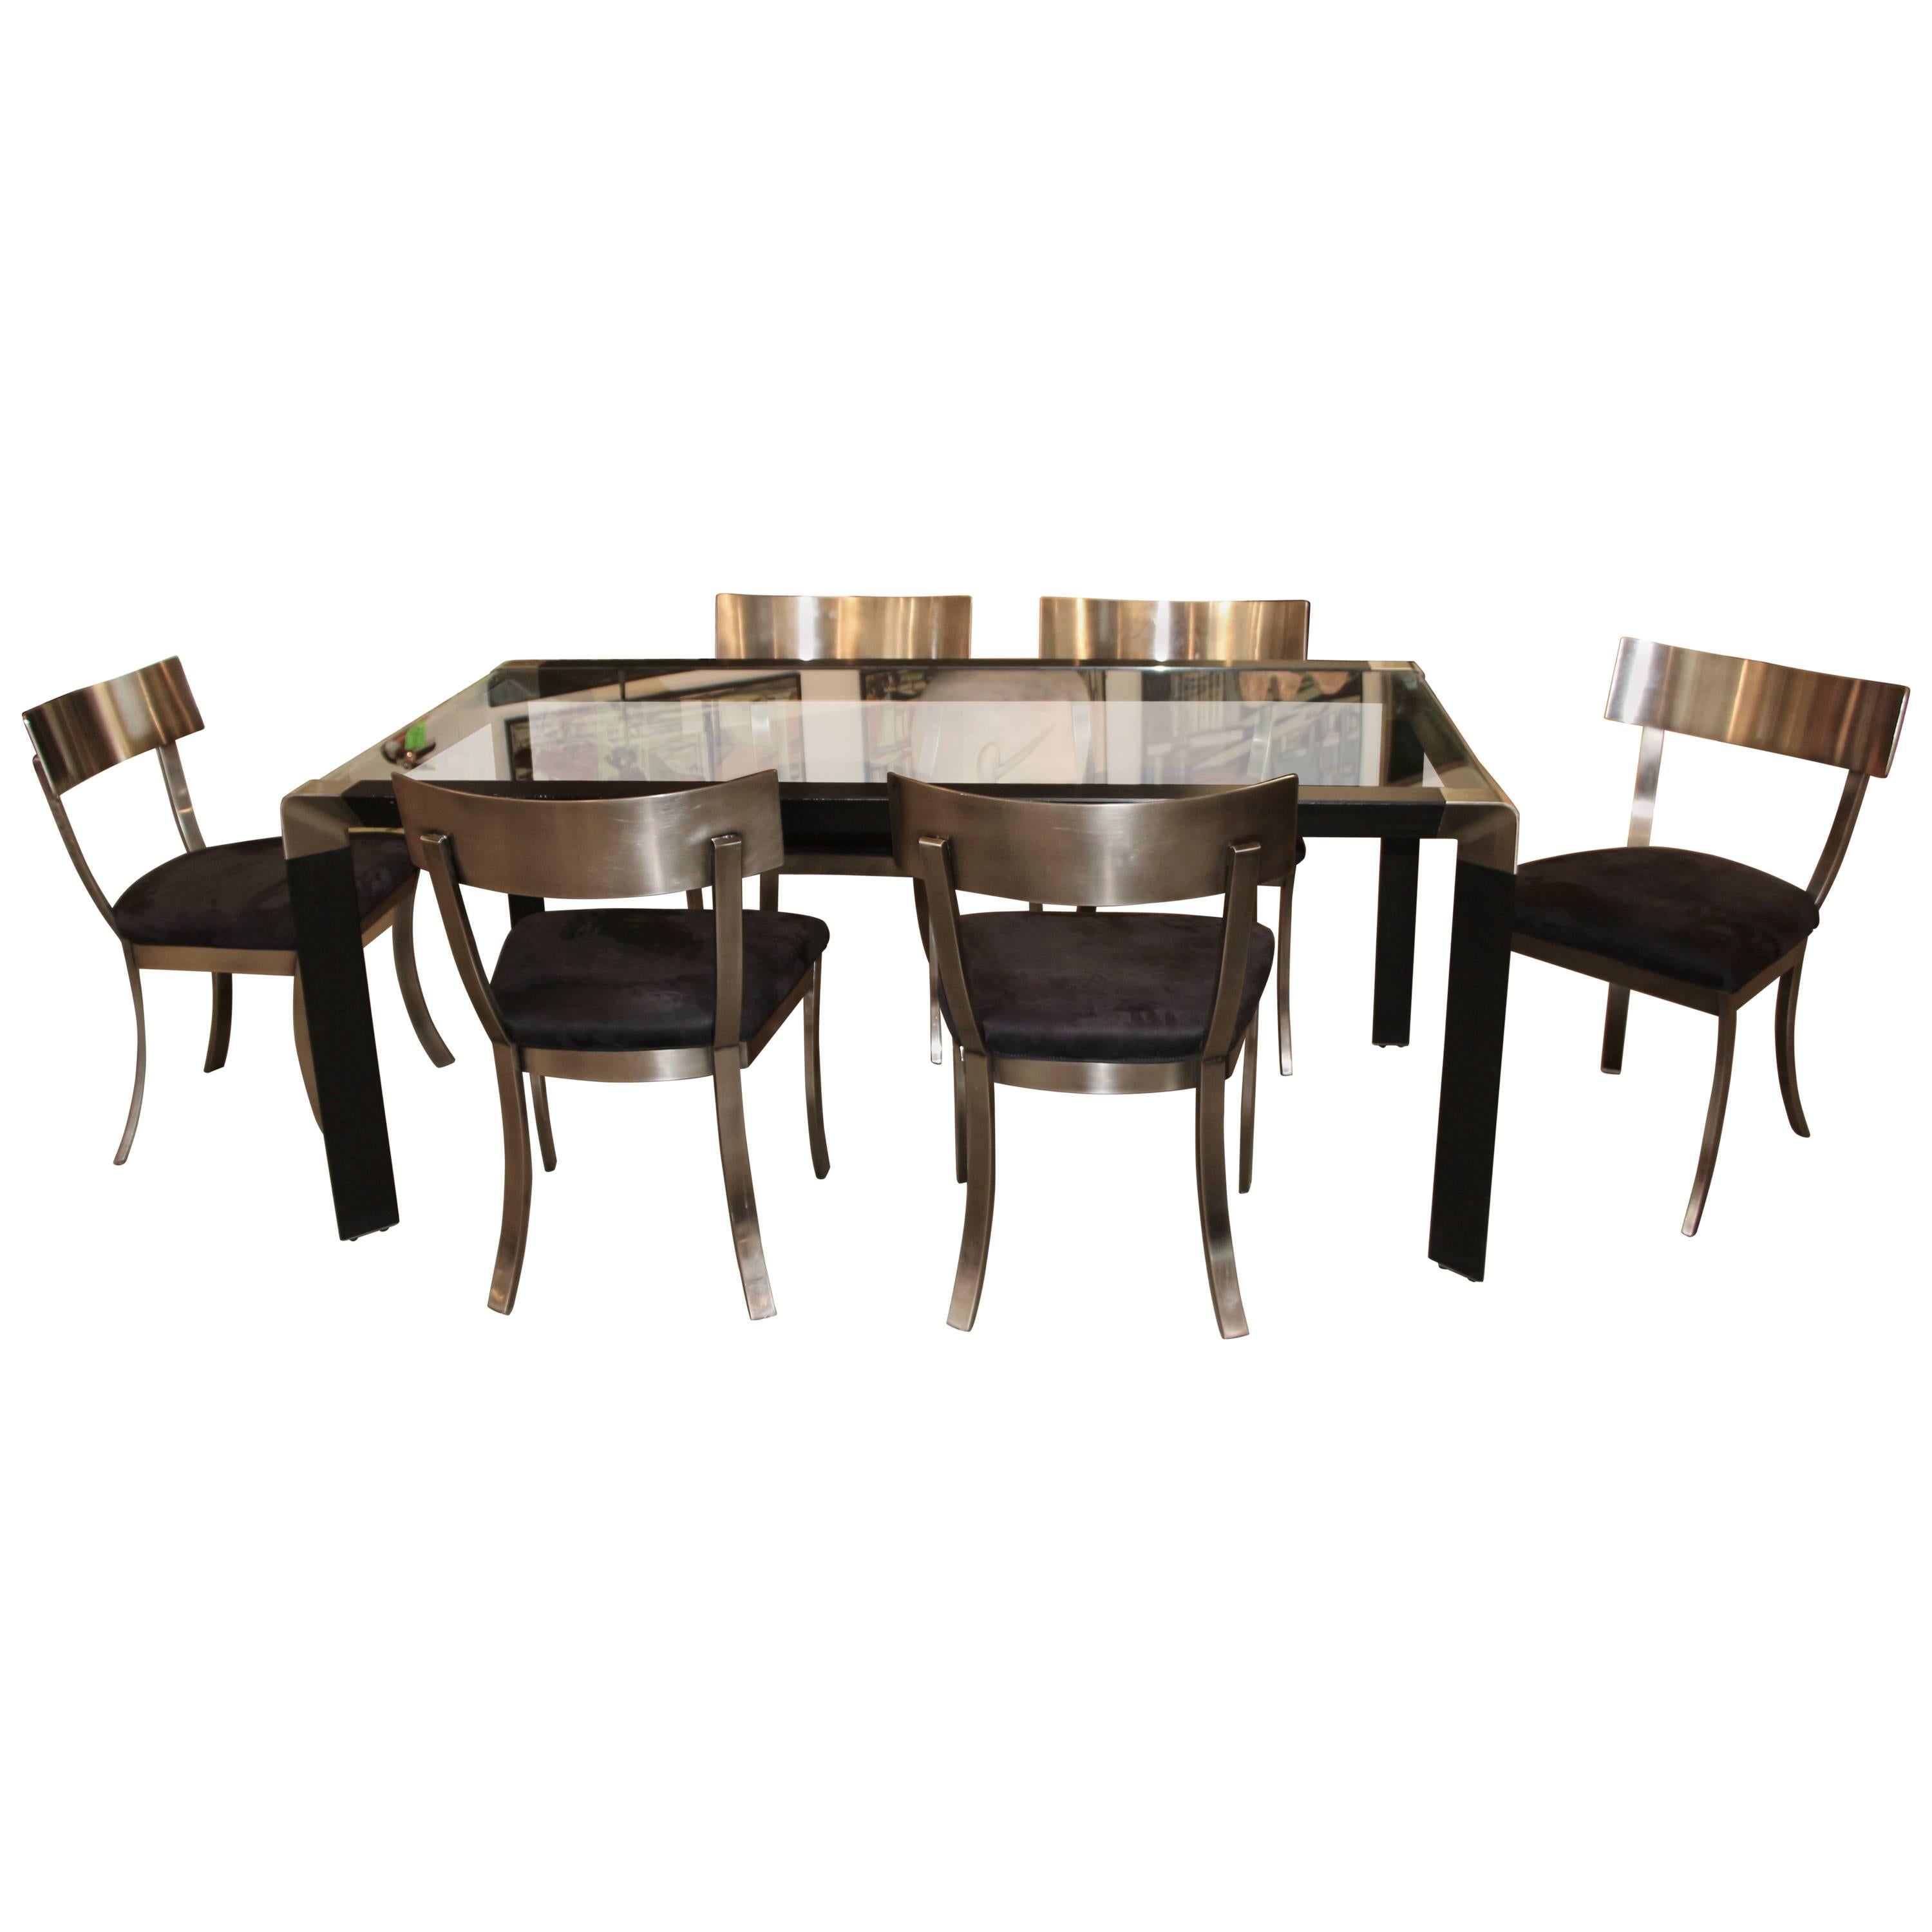 DIA Design Institute of America Steel Klismos Chairs Dining Table